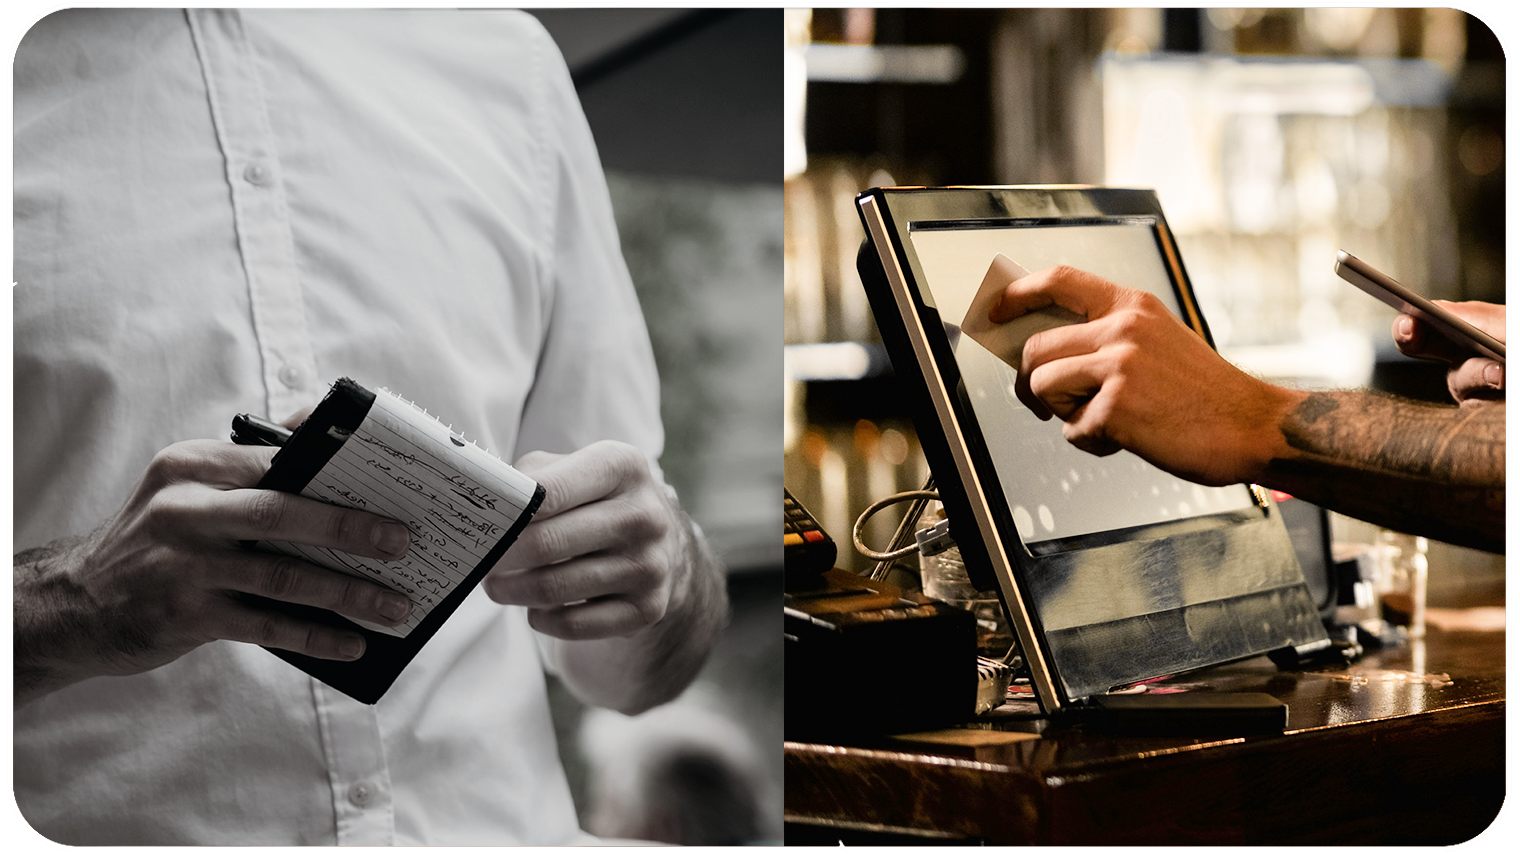 Program POS dla gastronomii niweluje pomyłki. Po lewej stronie obrazka na czarno biało widać kelnera z pokreśloną długopisem kartką. Po prawej stronie w kolorze system POS i ręka, która go obsługuje